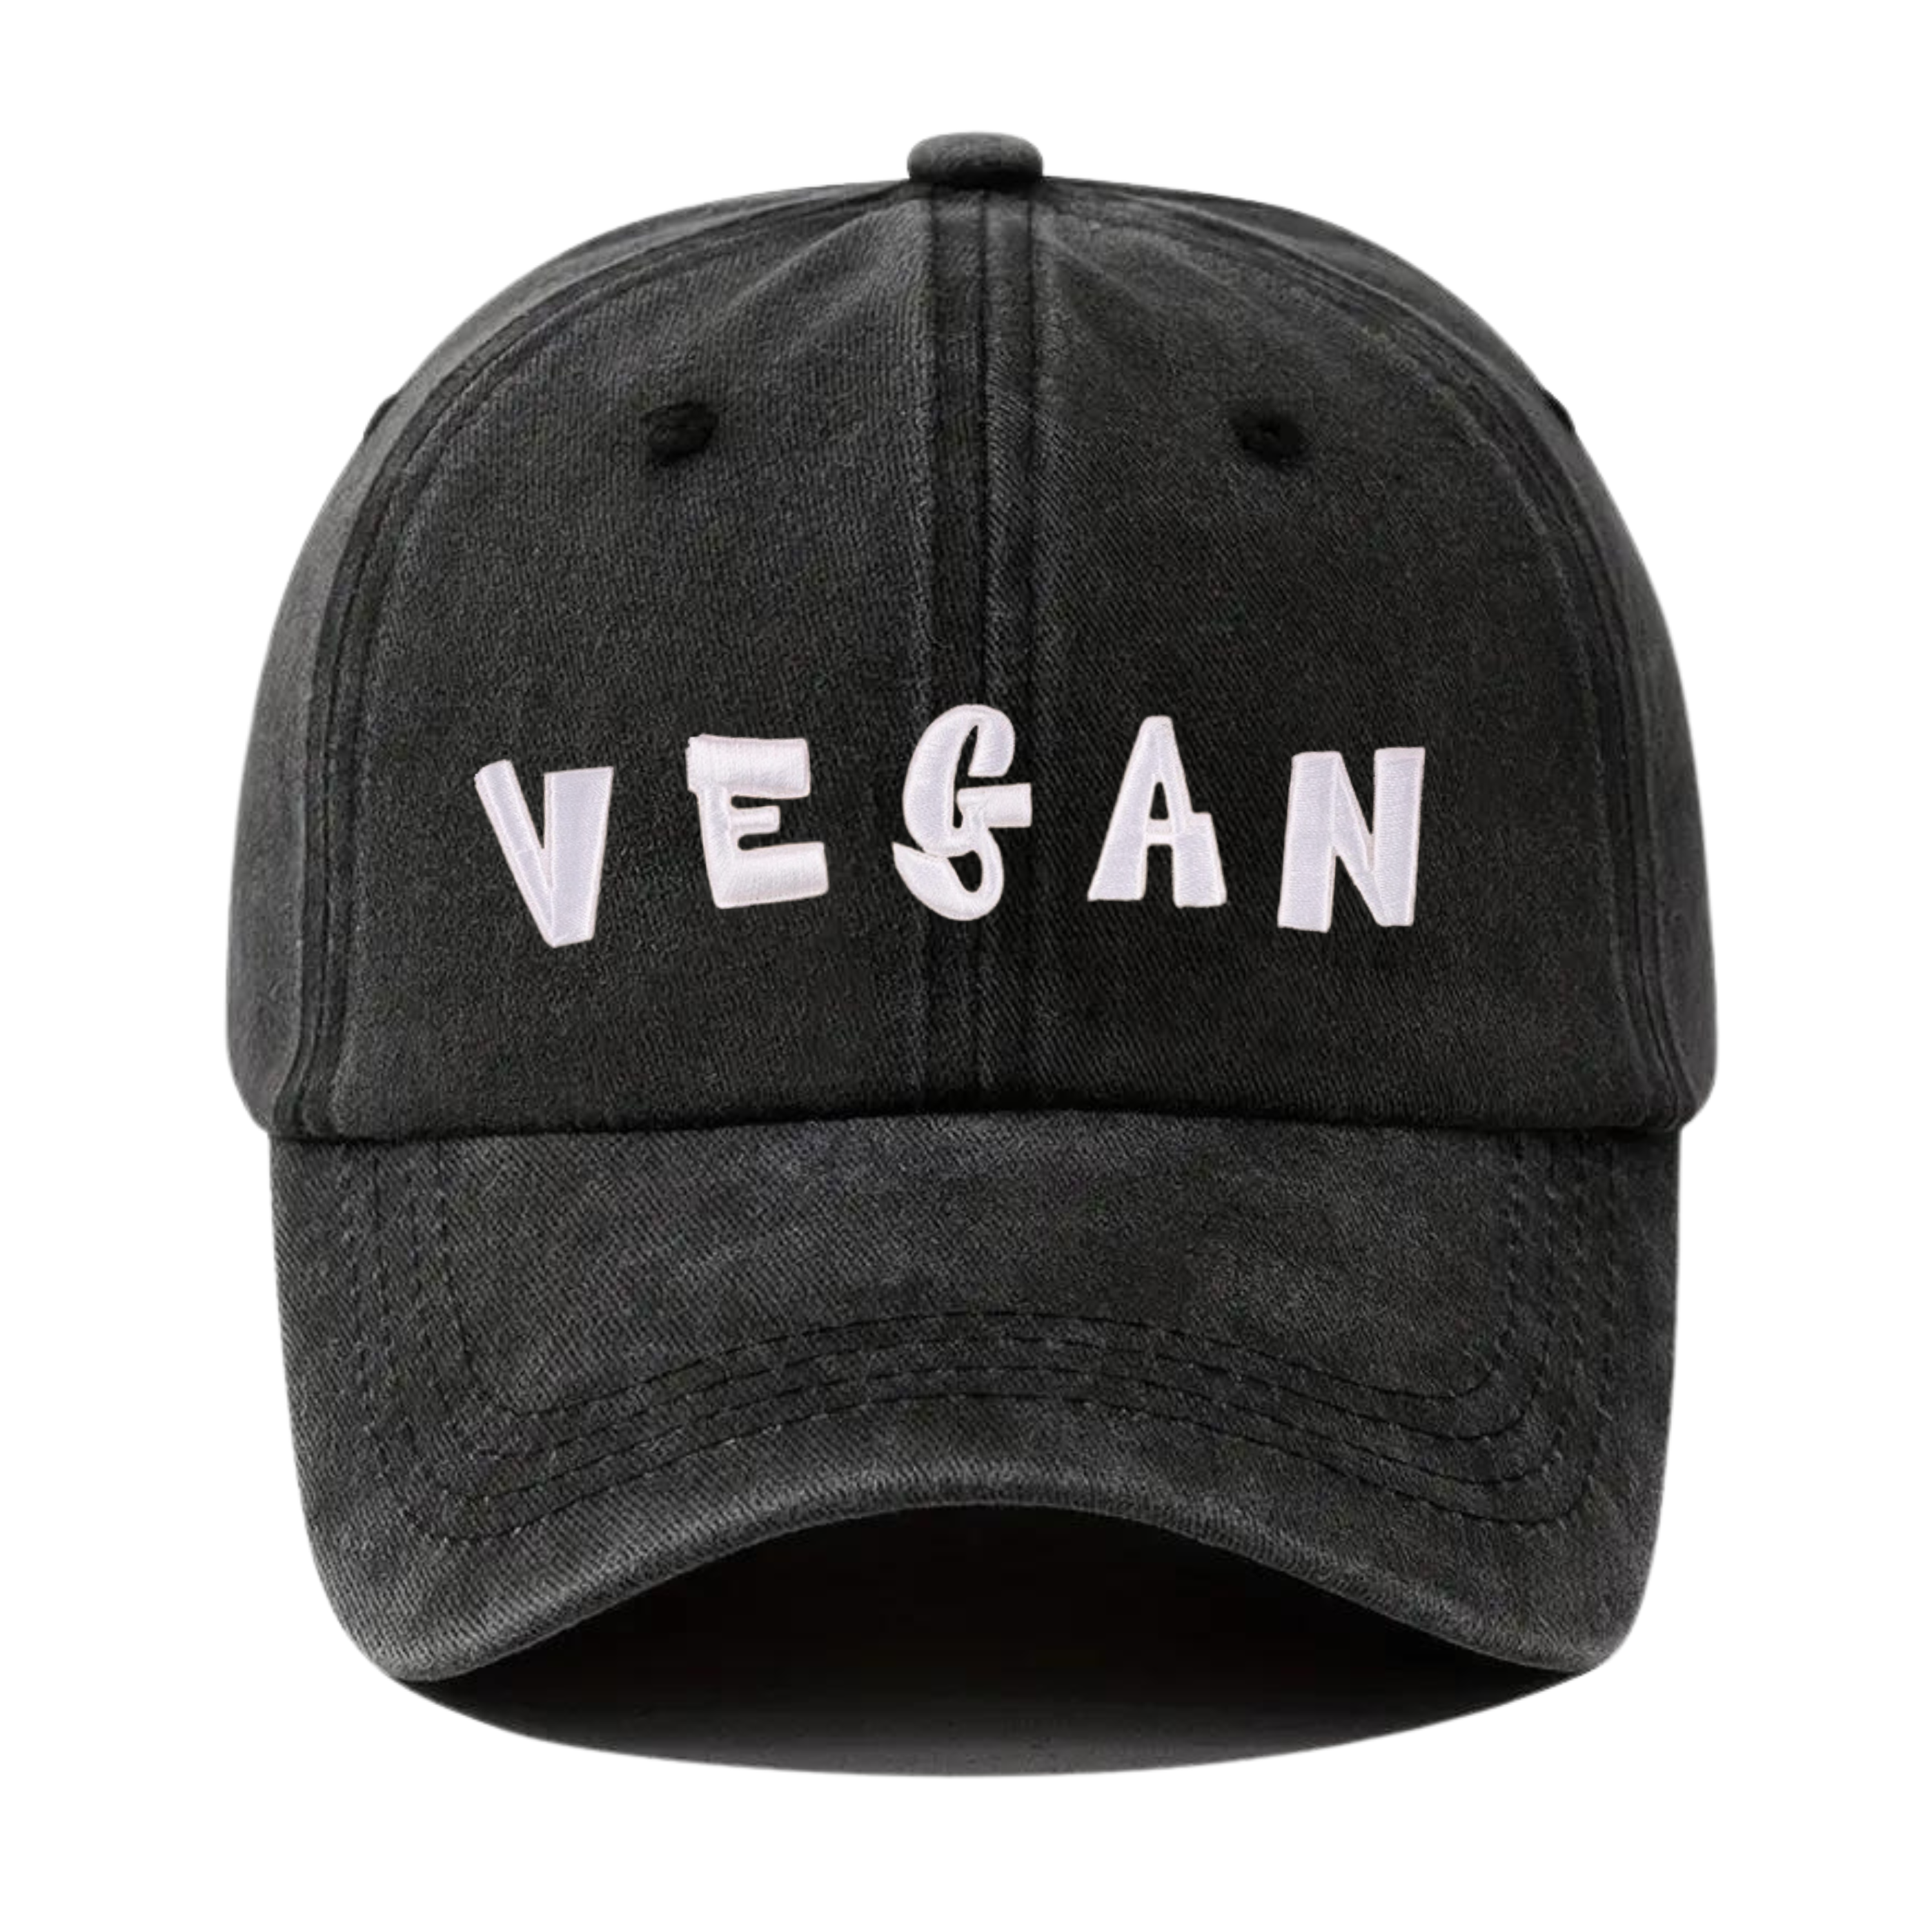 Vegan - Washed Black Cap - Empatii